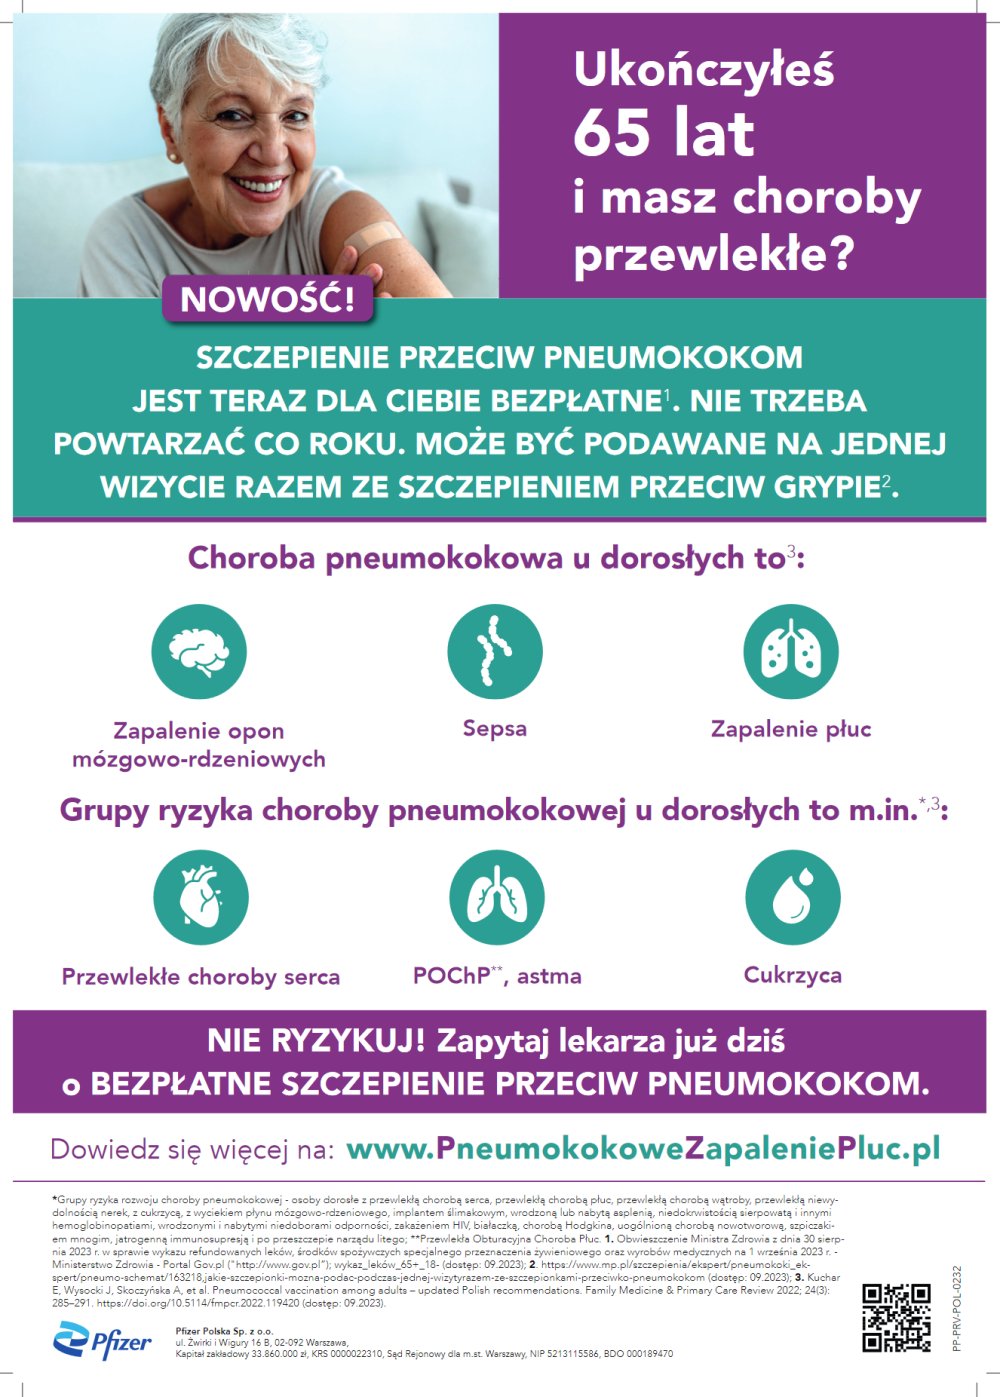 Bezpłatna ochrona przed infekcjami pneumokokowymi dla mieszkańców po 65 roku życia